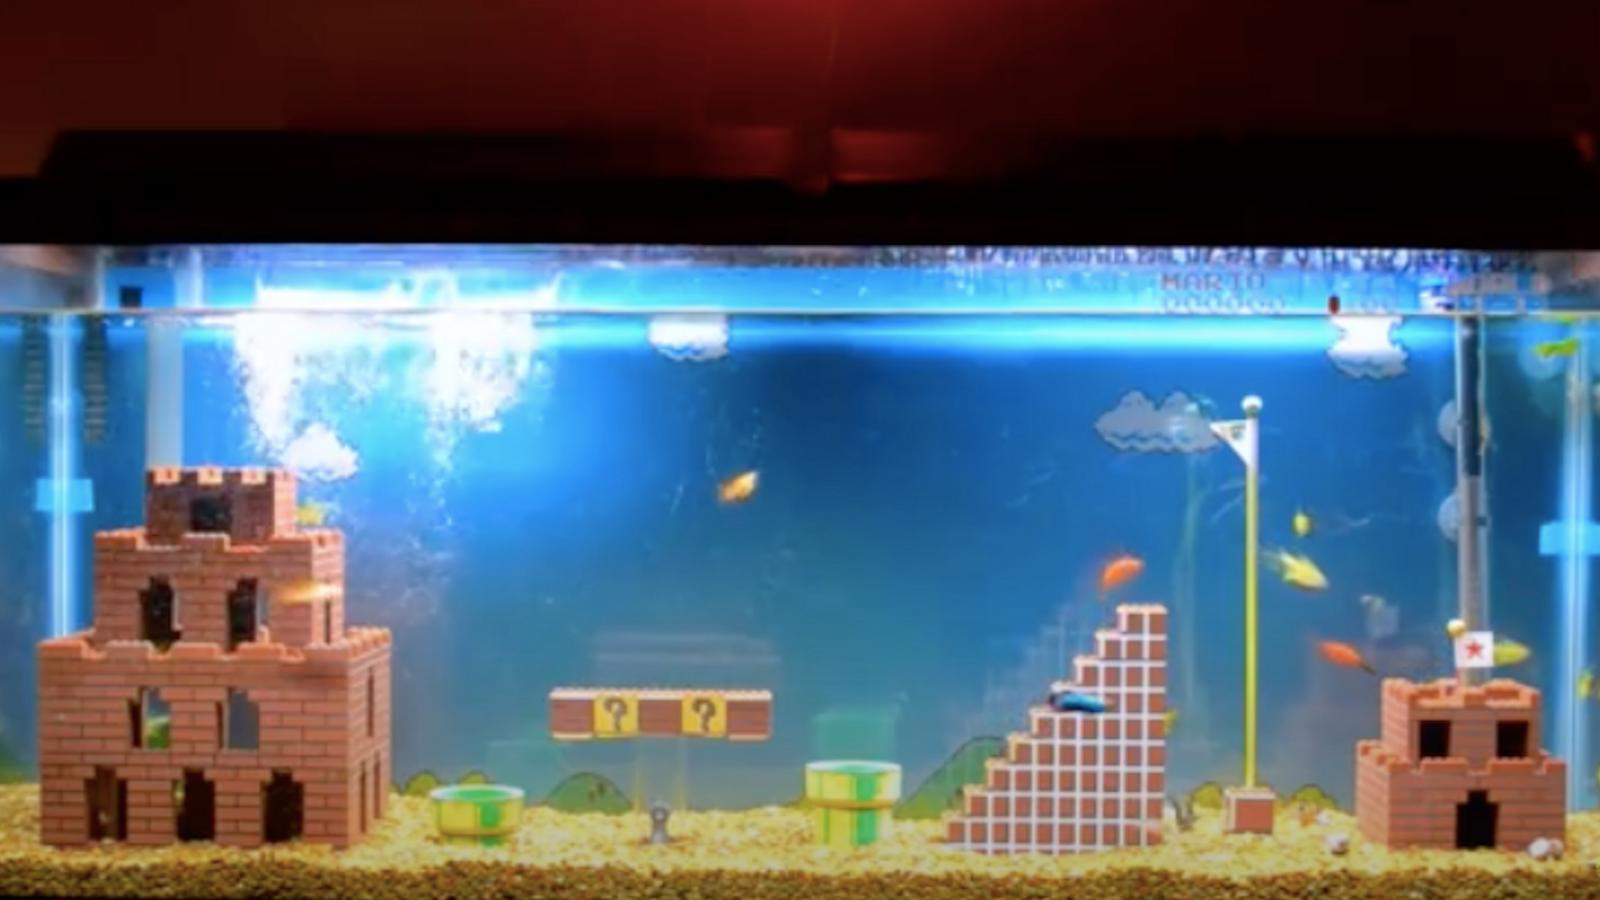 Le décor d’aquarium parfait pour les fans de jeux vidéo